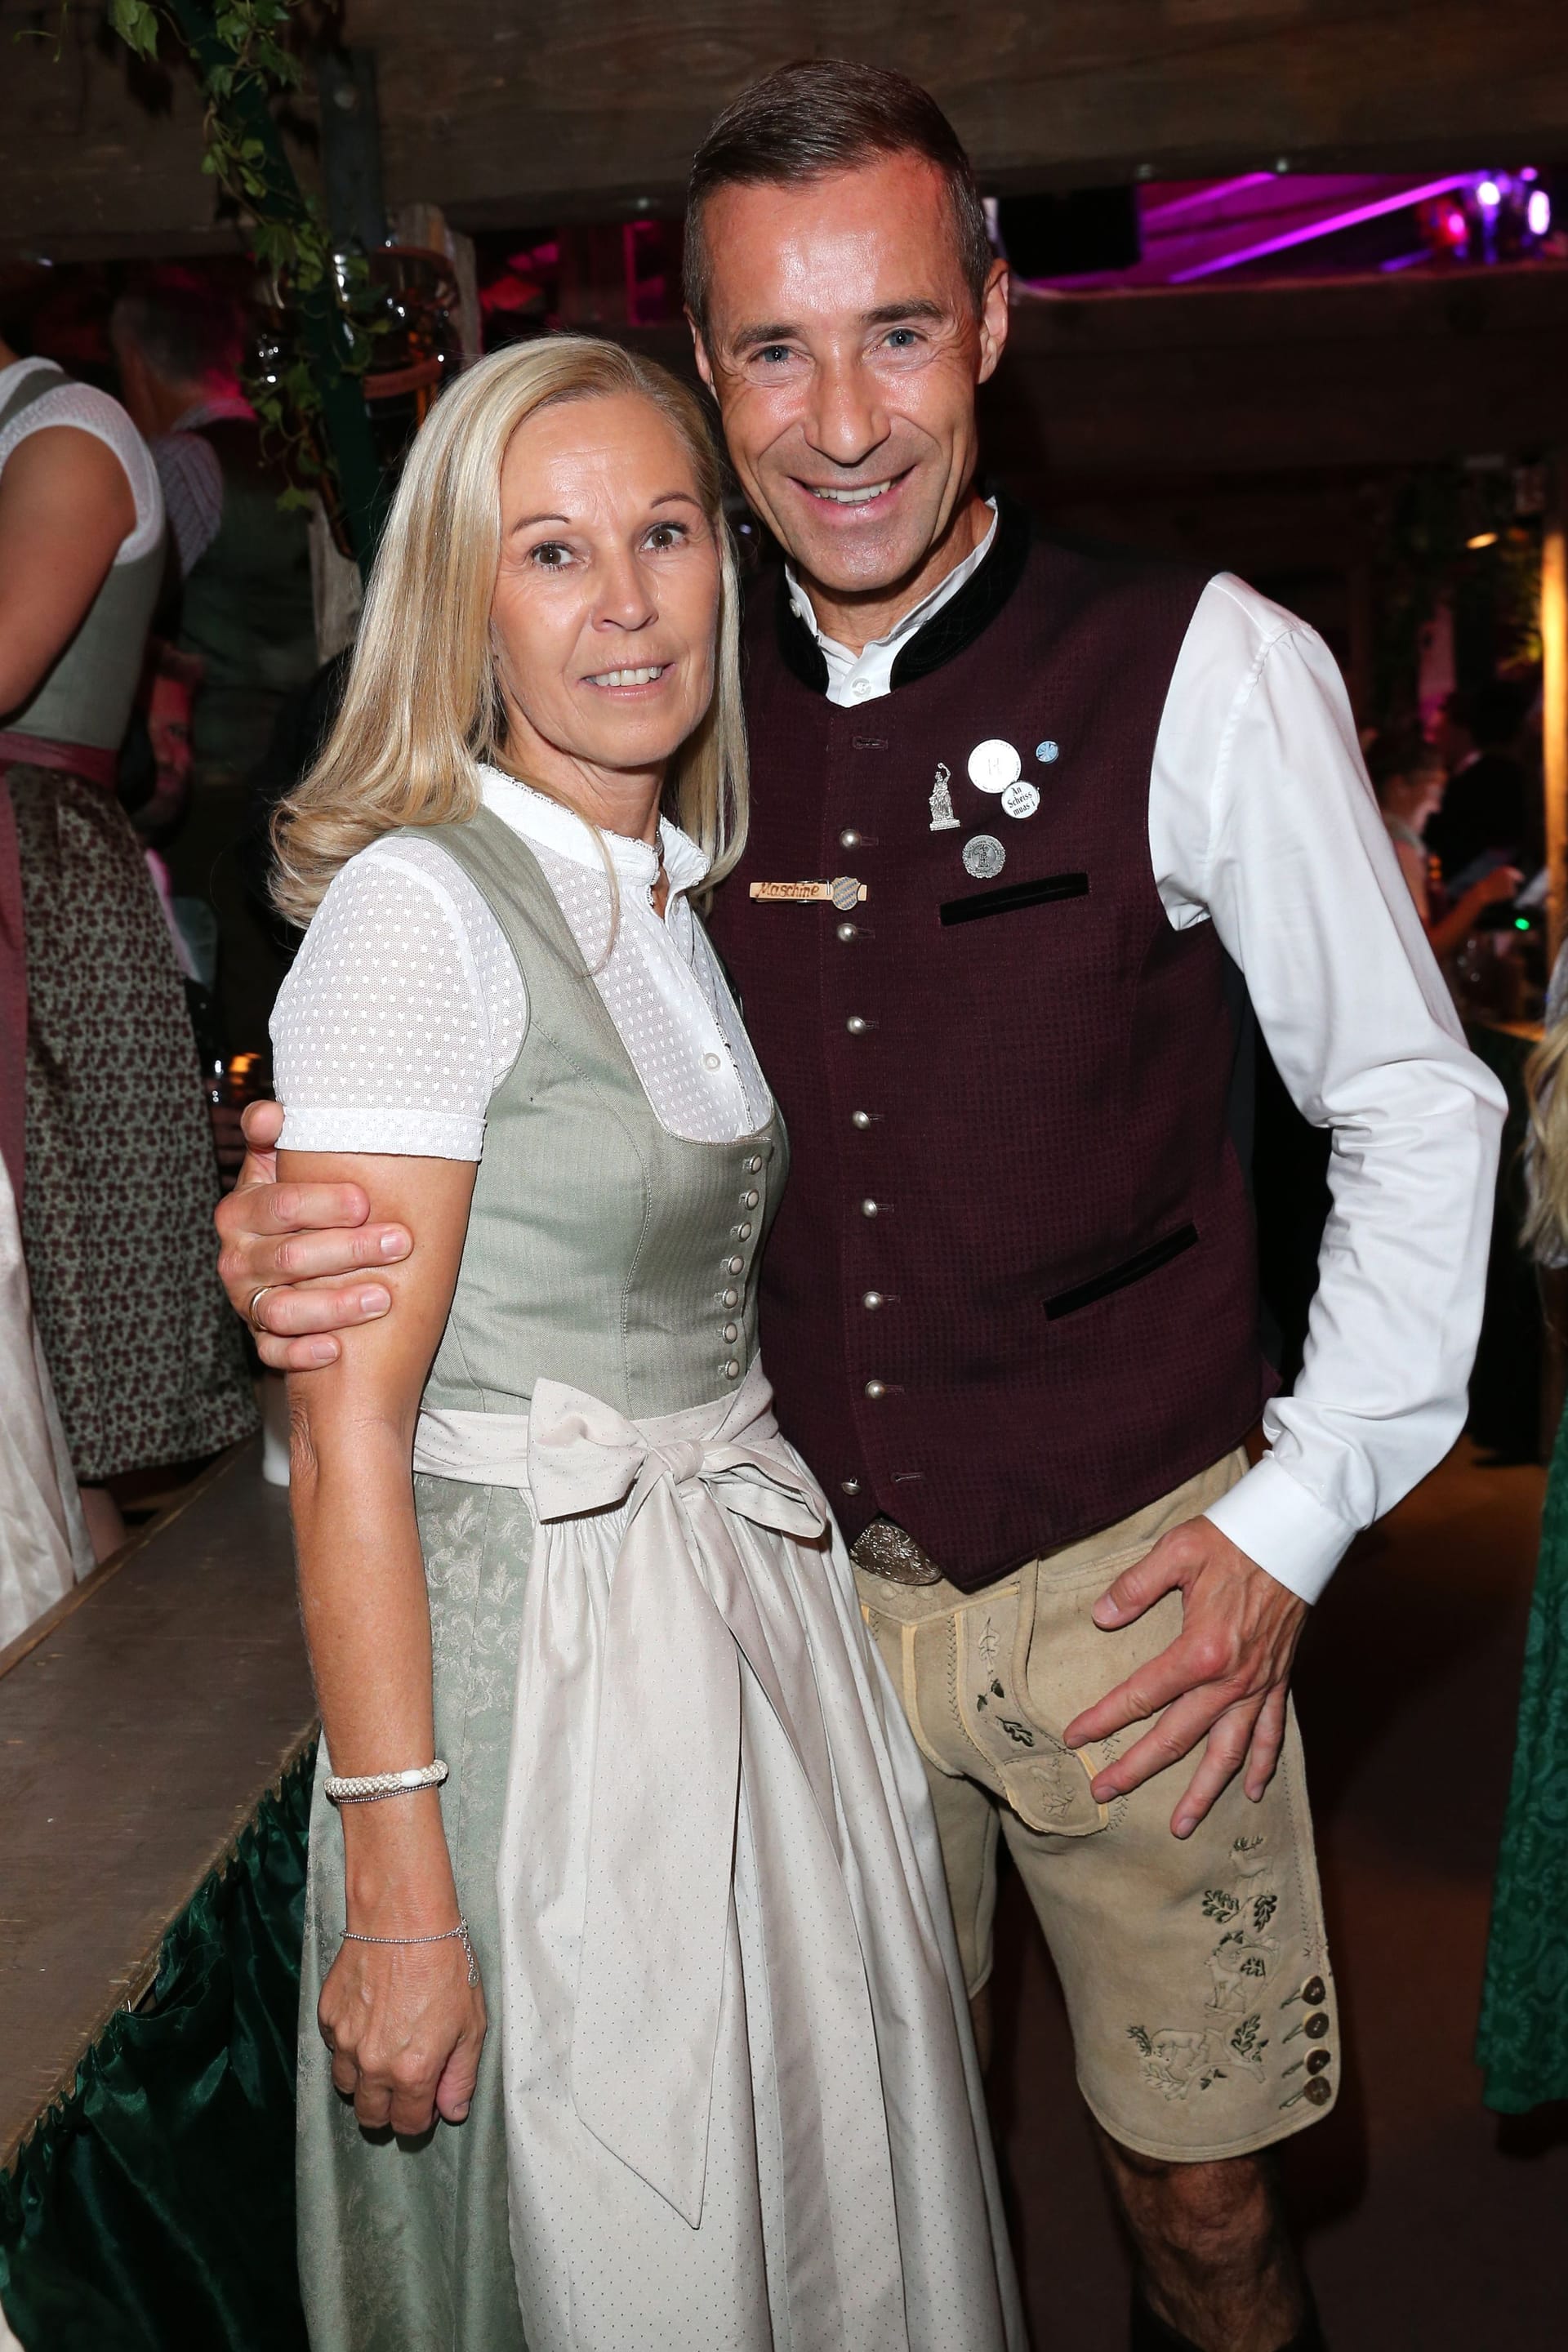 Ilke und Kai Pflaume: Das Paar besuchte gemeinsam das Oktoberfest.